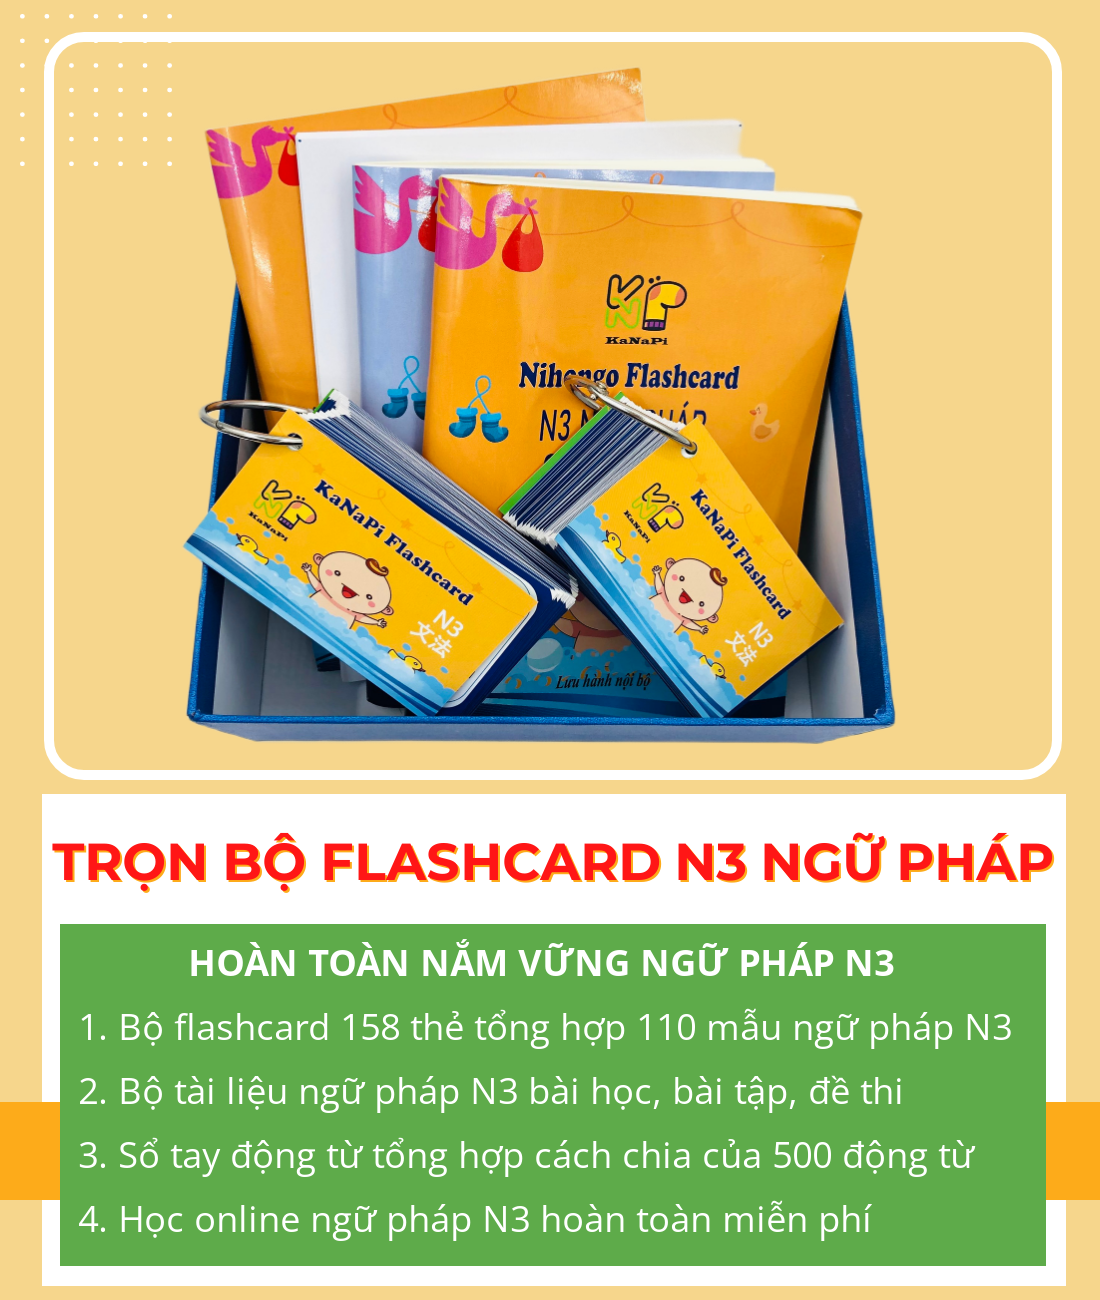 Lifestyle designTrọn Bộ Flashcards N3 Ngữ Pháp (Thẻ flashcard + Bộ sổ tay ngữ pháp N3 + Sổ tay động từ + Học Online) – Kanapi Flashcard